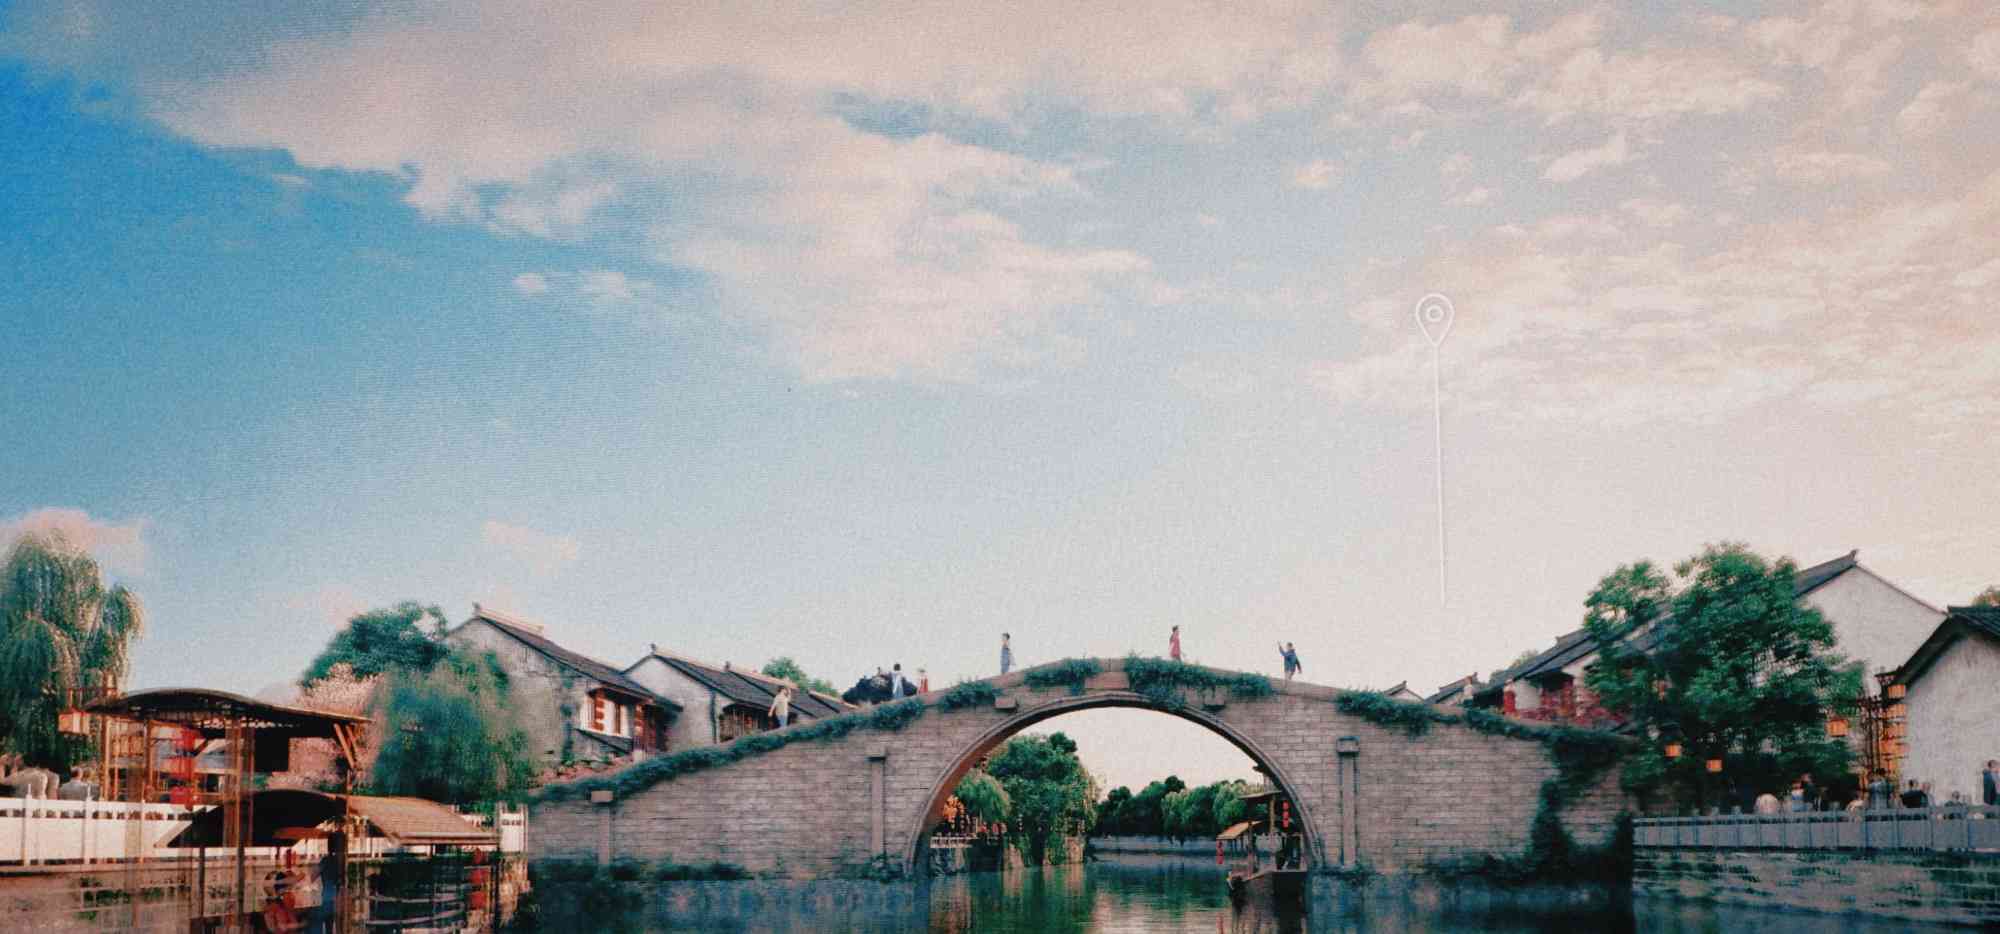 五亭桥,桥梁,桥,瘦西湖,扬州,江苏省,中国,亚洲照片摄影图片_ID:418155918-Veer图库